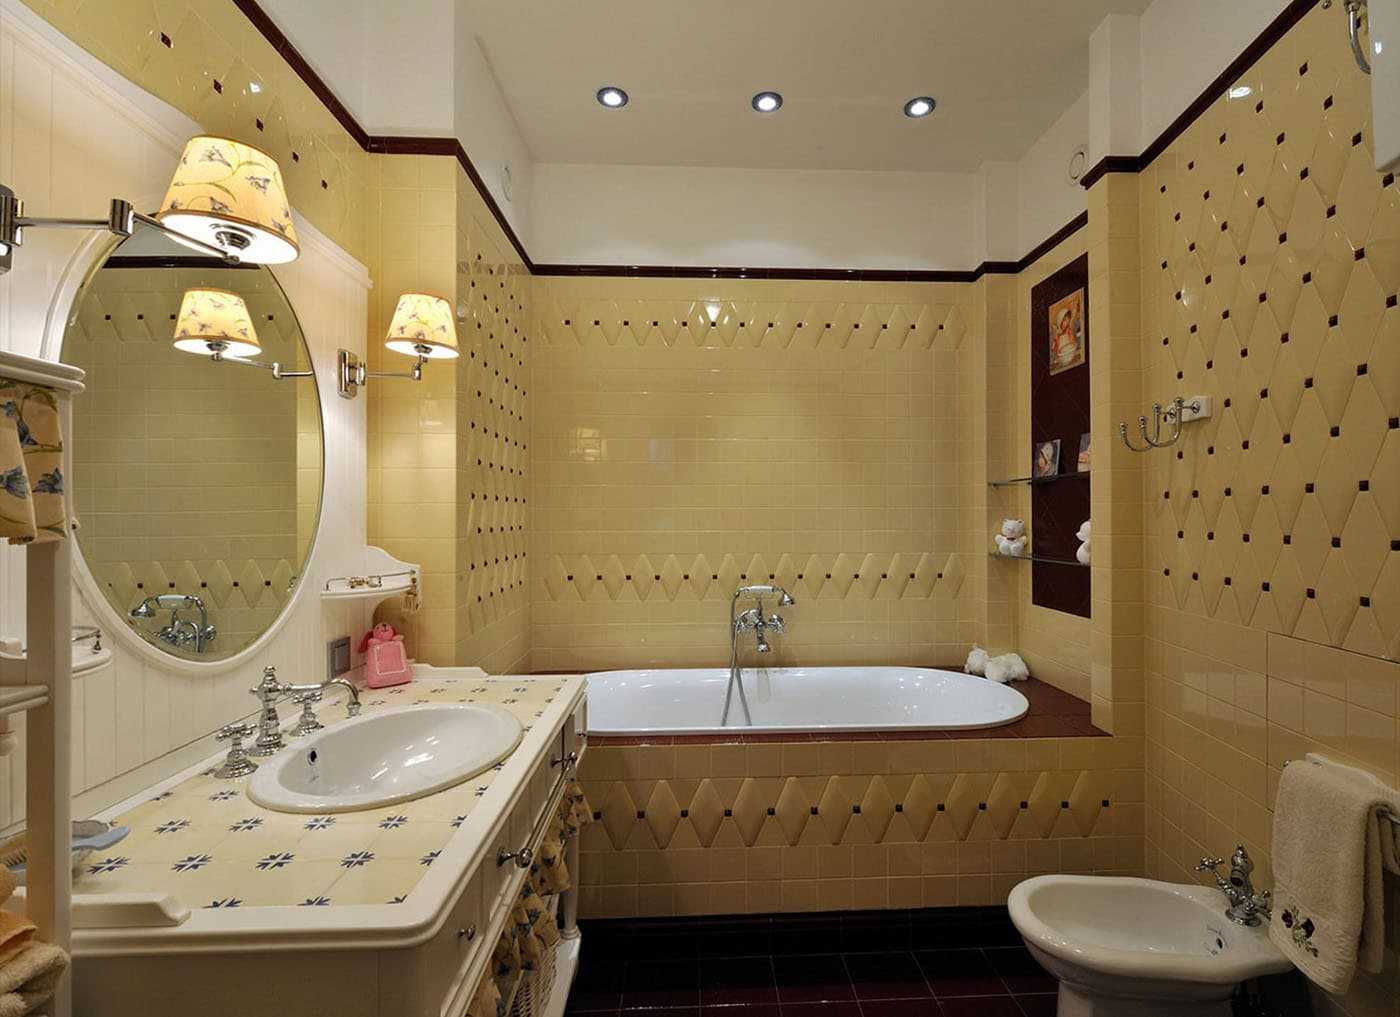 Плитка шебби-шик в интерьере ванной: идеи в лучшем дизайнерском стиле с фото